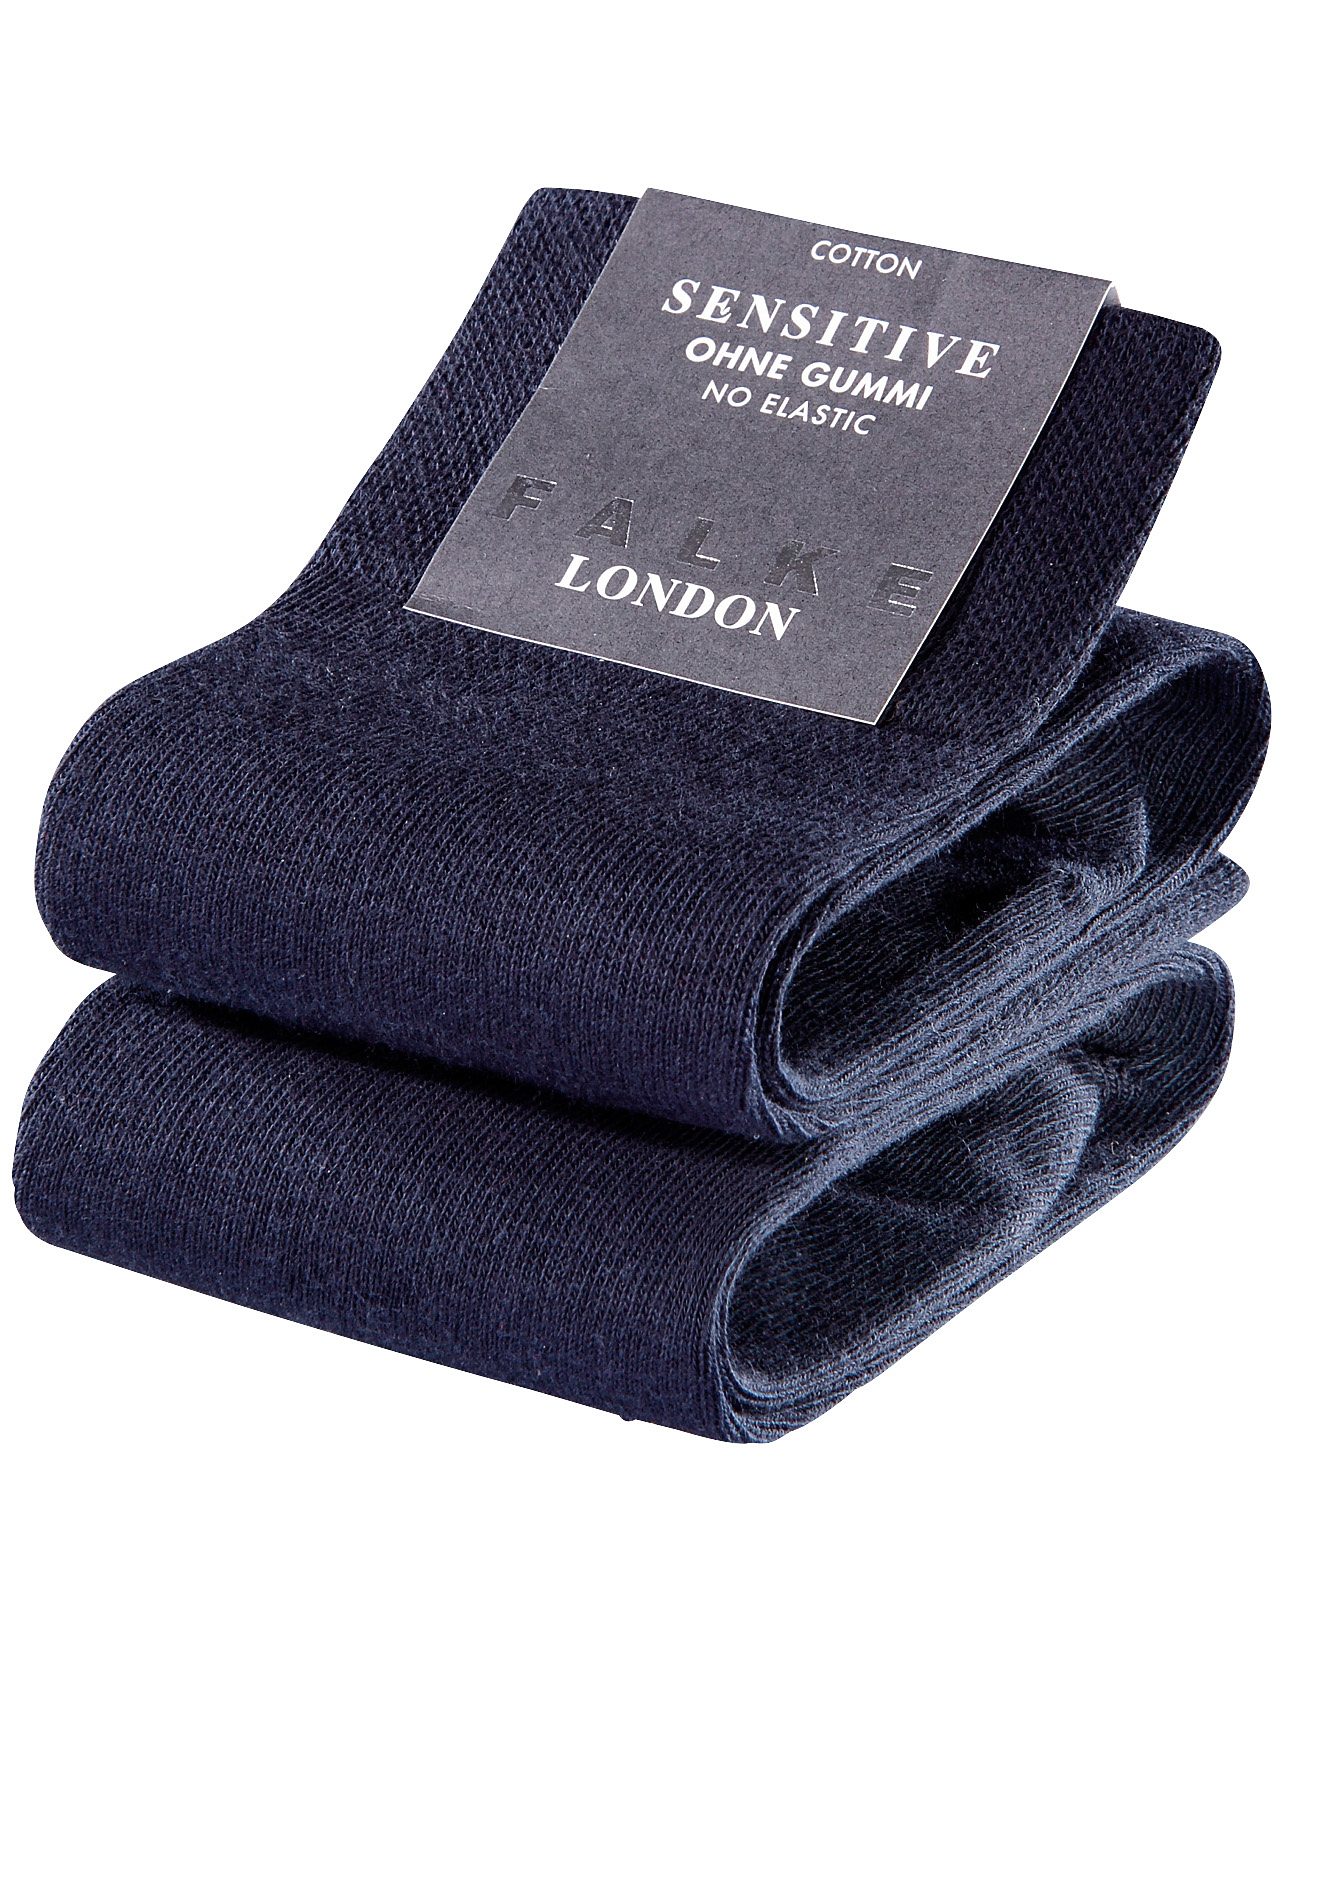 FALKE Socken »Sensitive London«, (2 Paar) von Falke